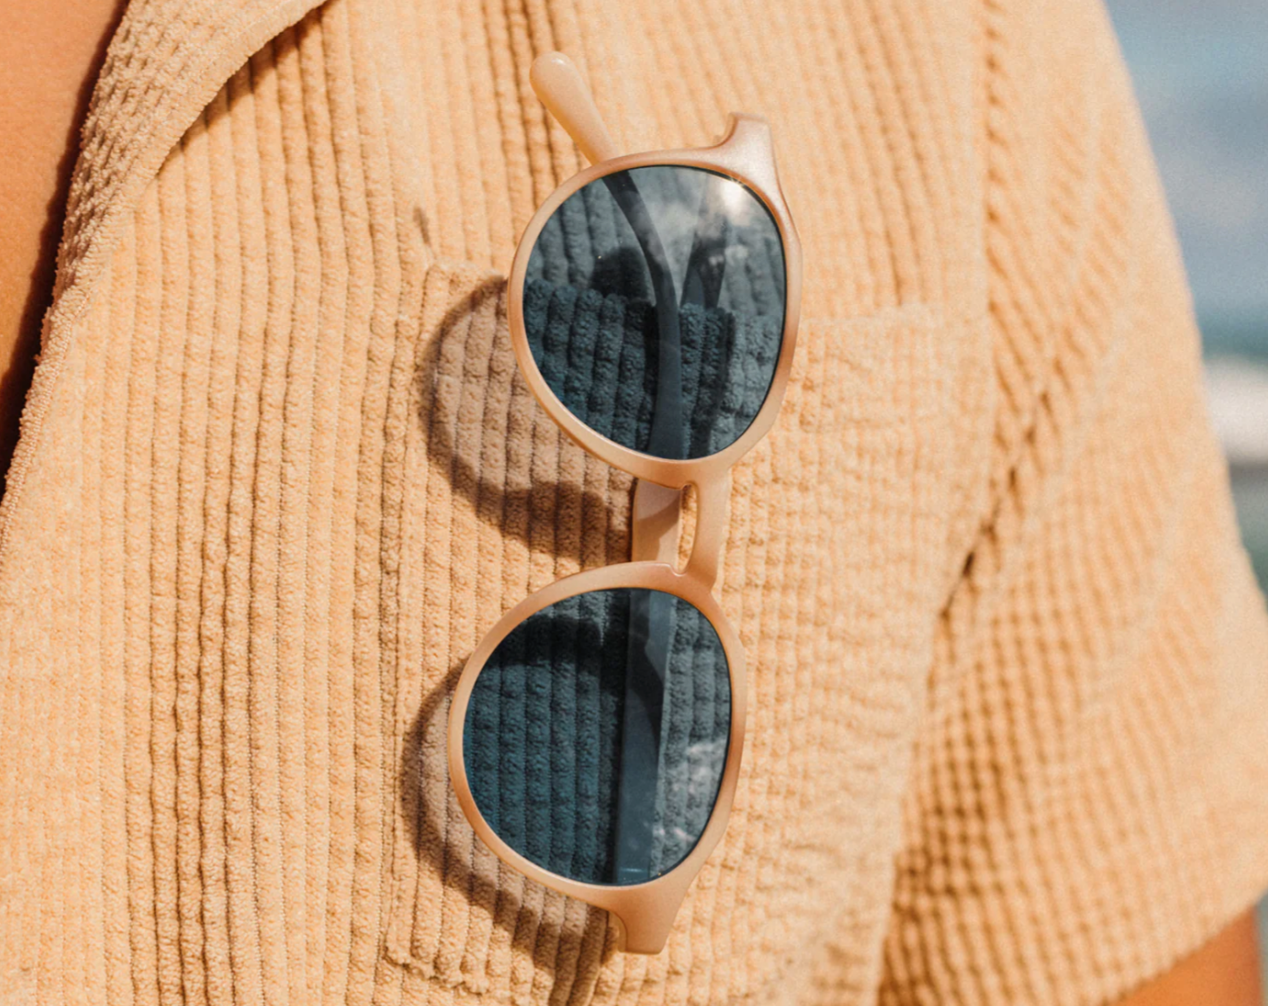 Vallarta Lo-Lite Sunglasses tucked into someone's chest pocket